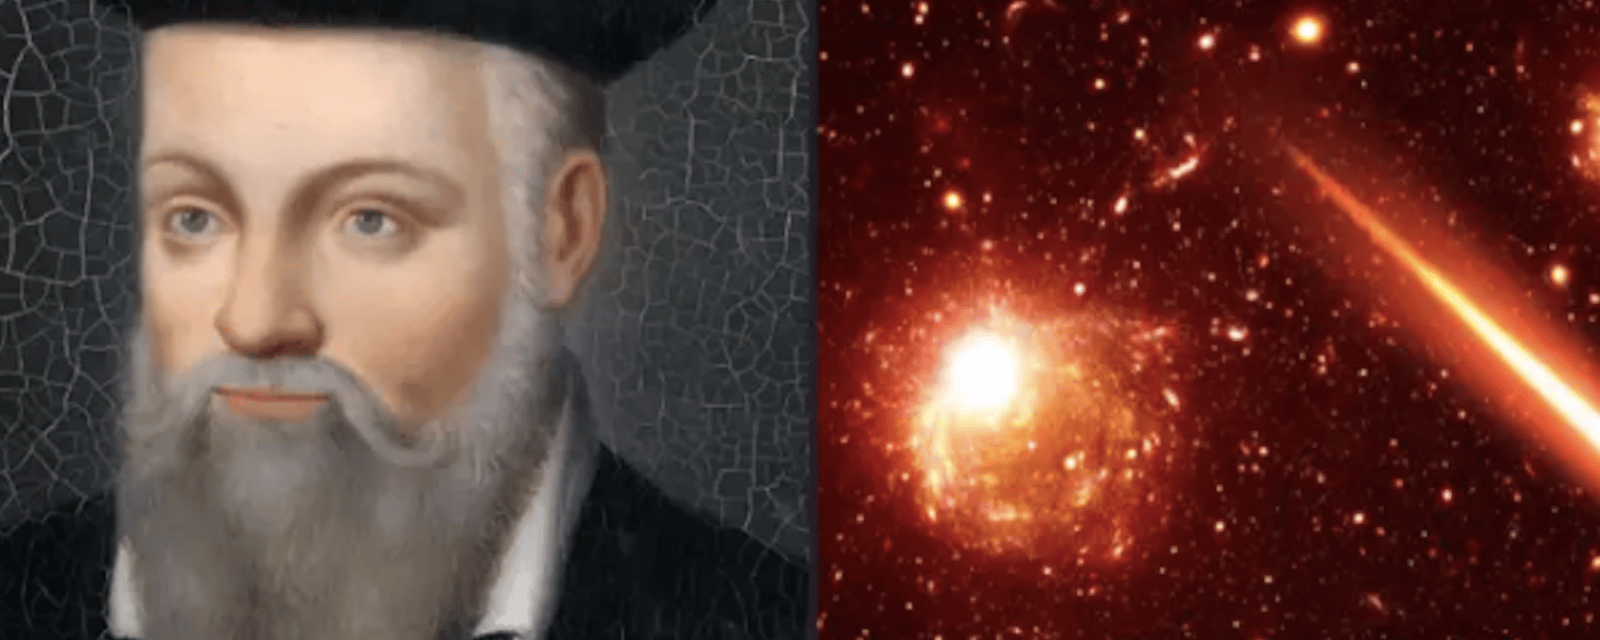 5 prédictions effrayantes de Nostradamus pour 2023